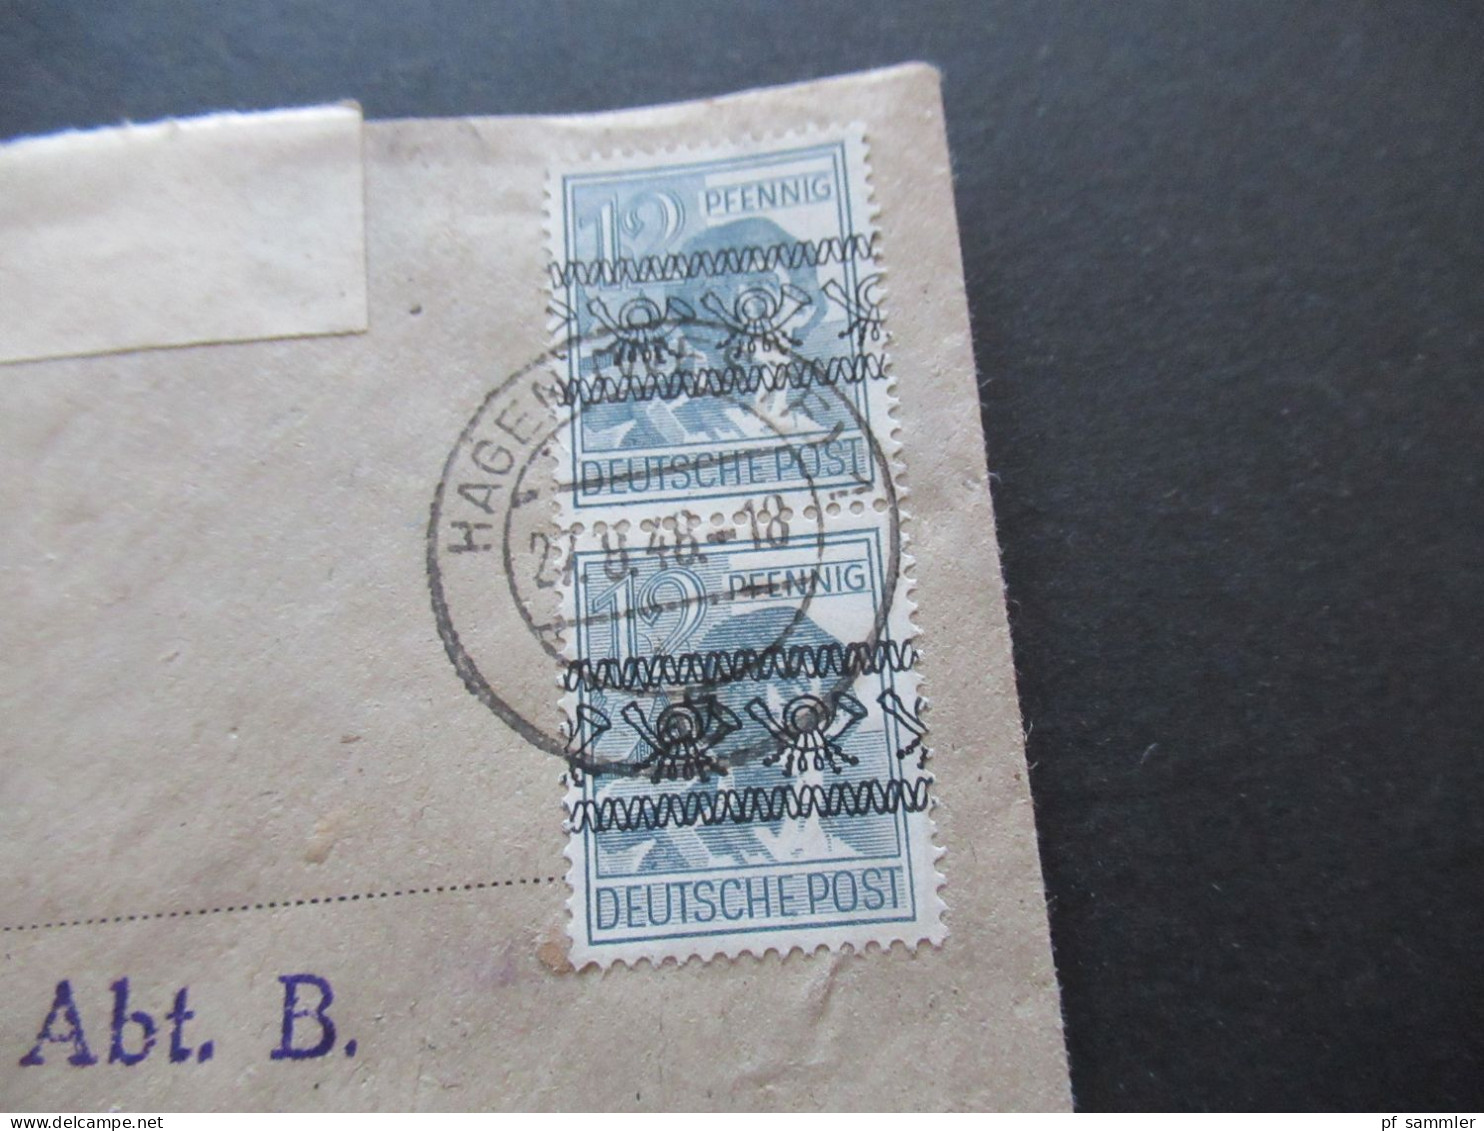 27.8.1948 Bizone Nr.40 I (2) MeF Stempel Gewerbeaufsichtsamt Hagen In Westfalen An Das Ernährungsamt In Menden - Lettres & Documents